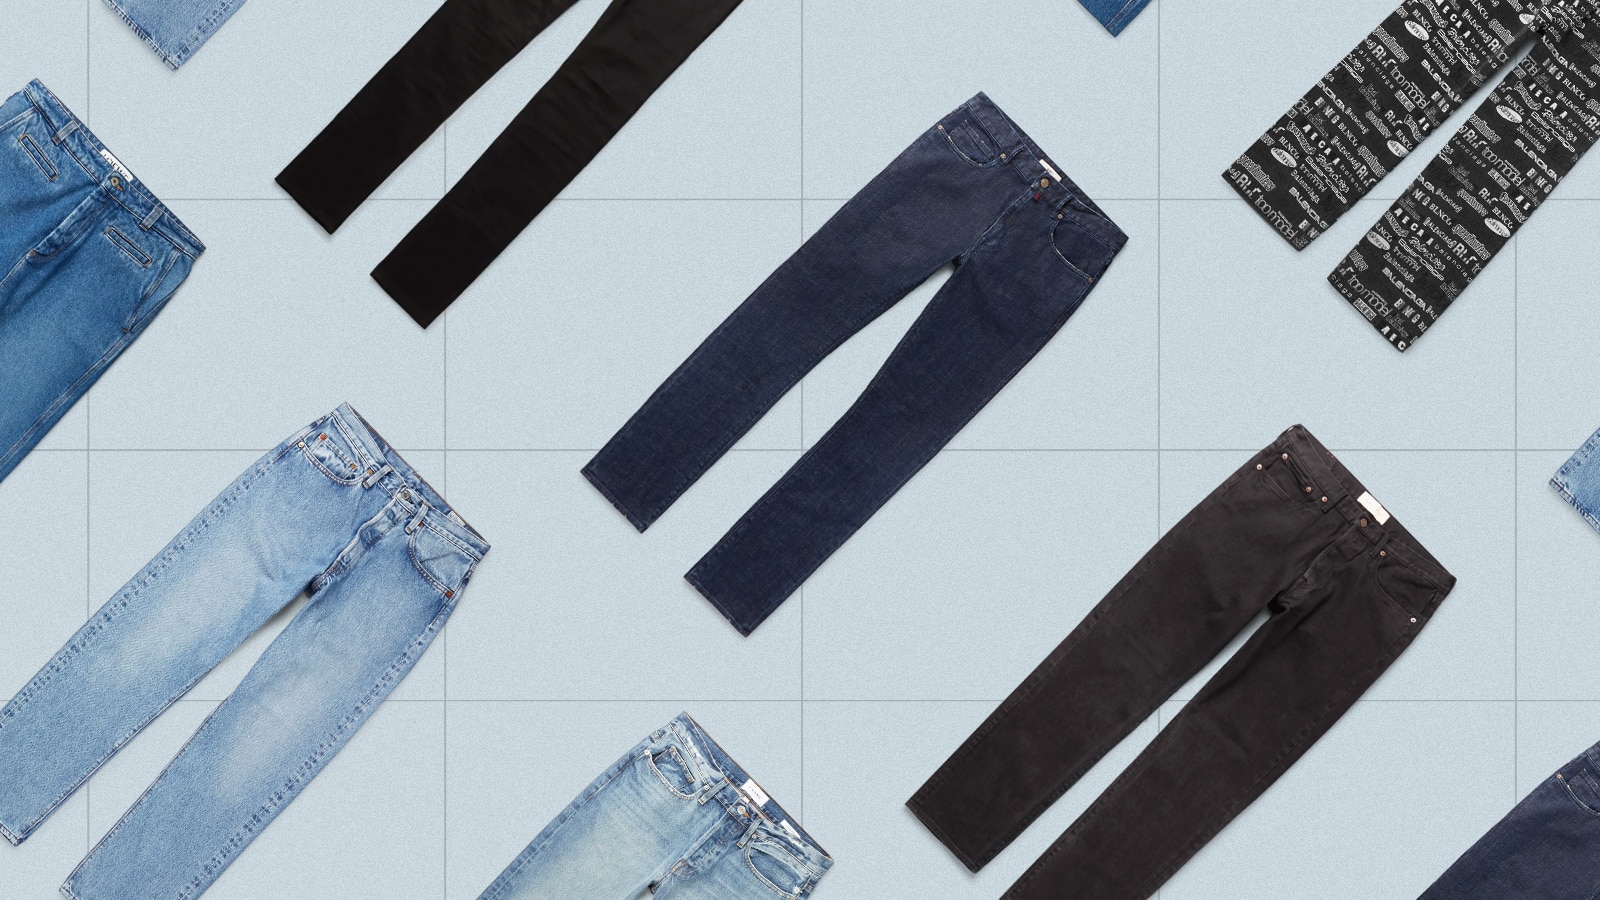 NOW AND THEN | Denim jeans fashion, Denim details, Denim jeans men